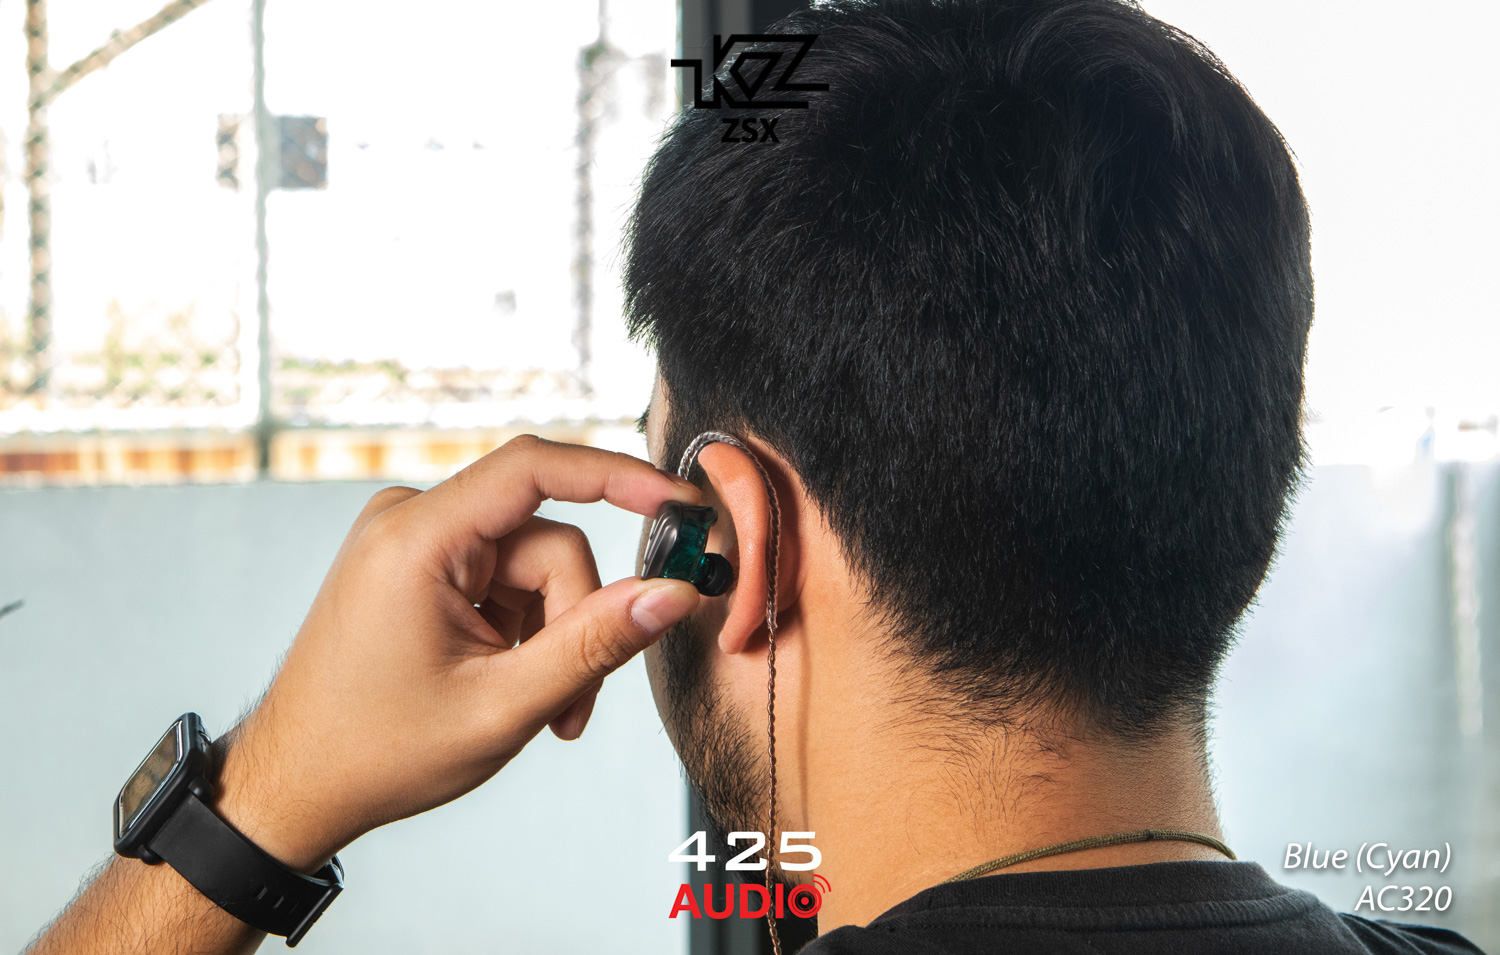 kz zsx,kz zsx mic,kz,zsx,IEM,in ear,in ear monitor